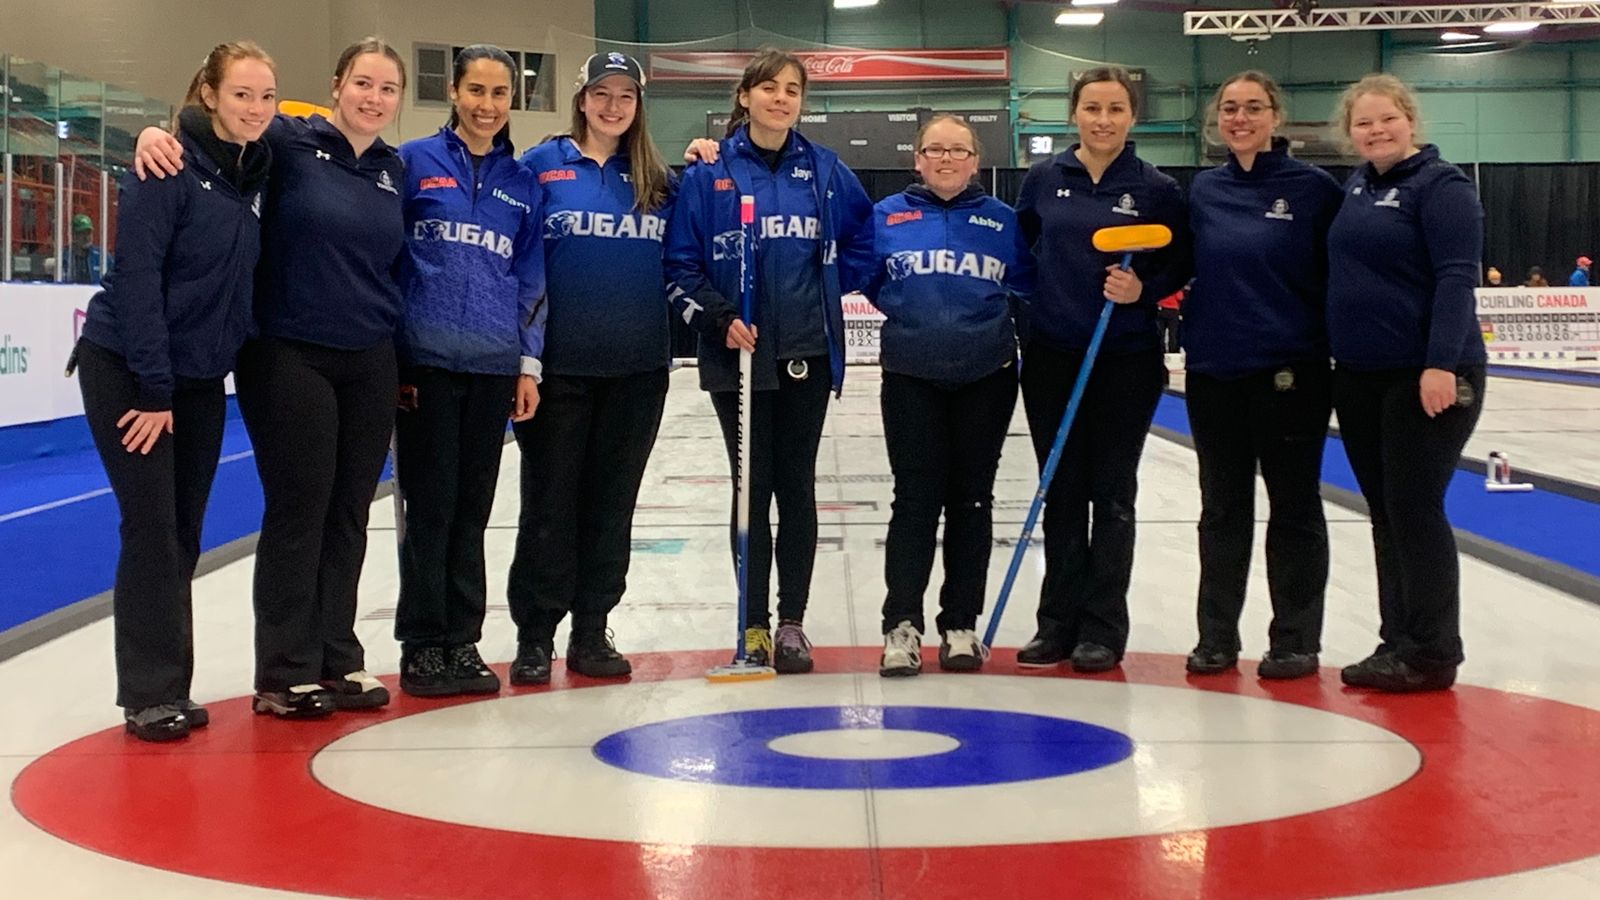 Jour 3 du Championnat canadien ACSC Curling Canada : le tableau des éliminatoires se dessine